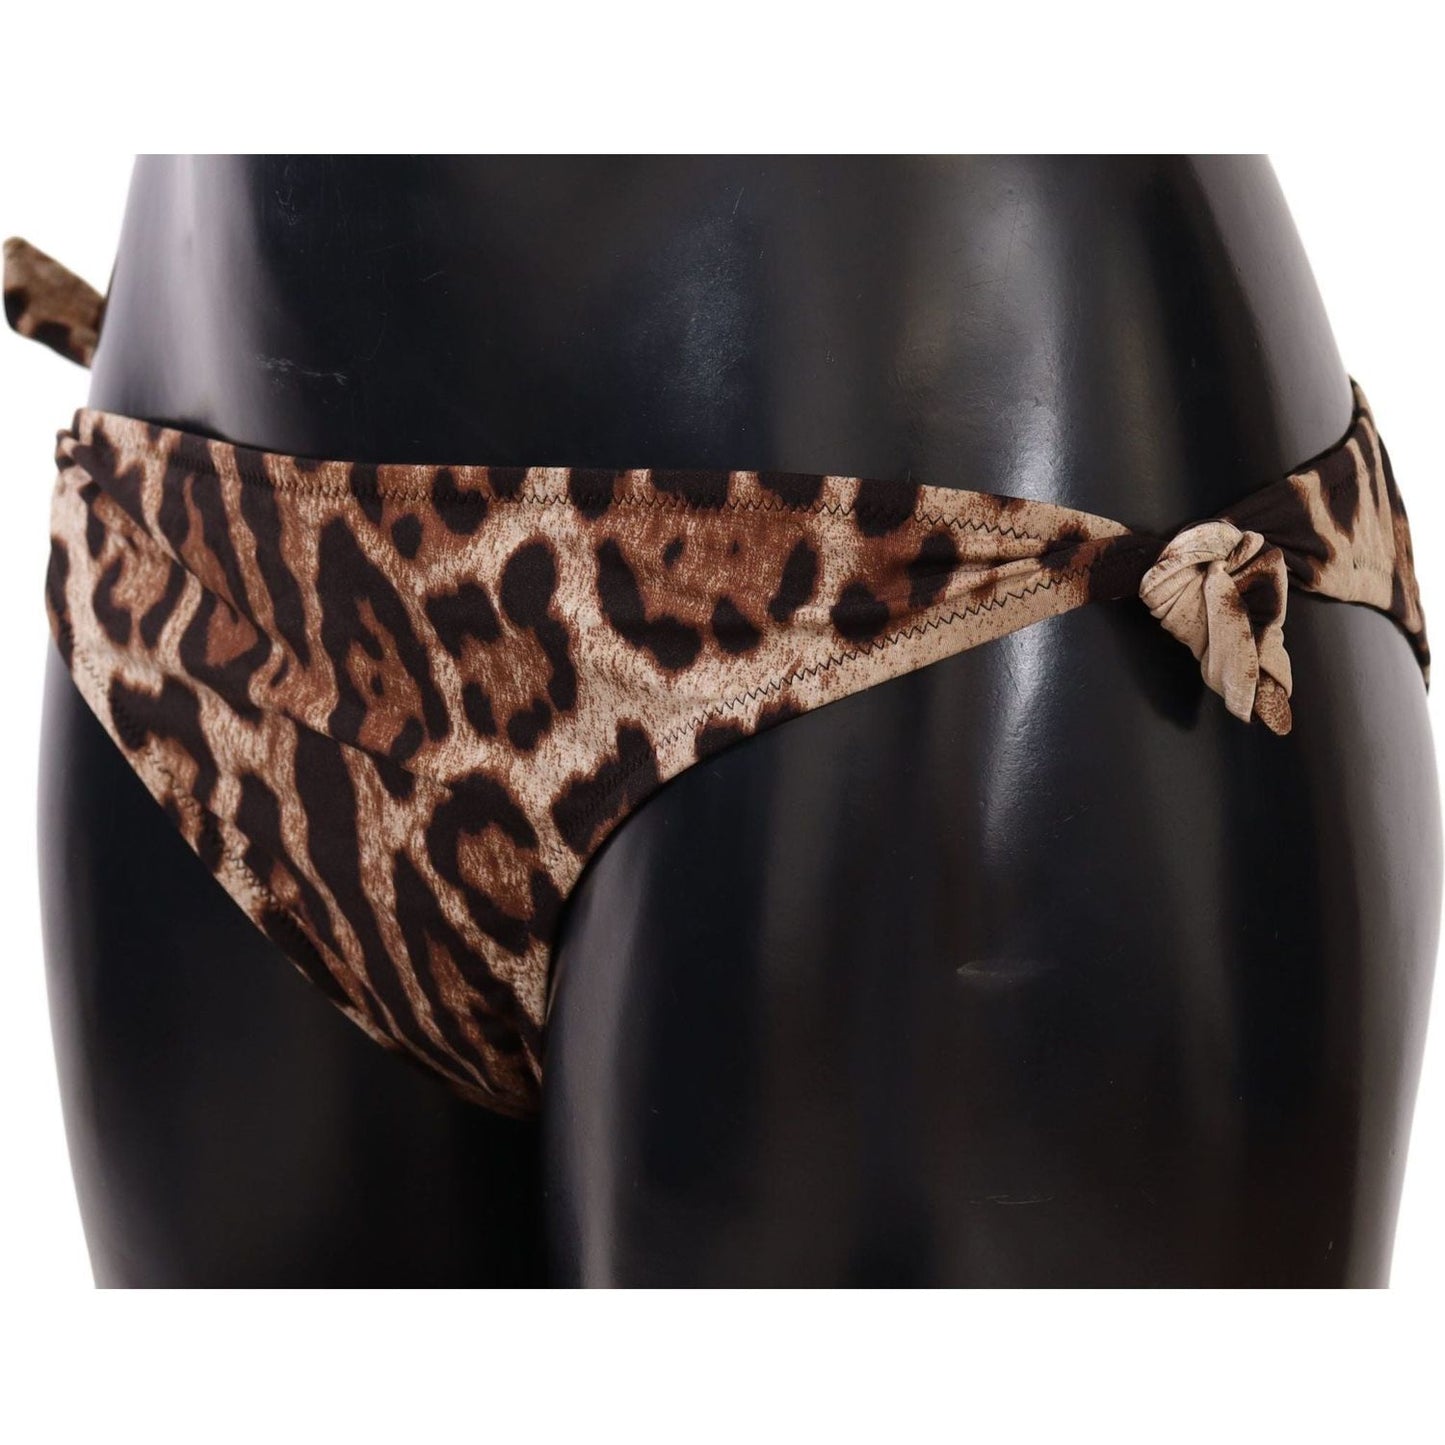 Dolce & Gabbana Elegant Leopard Print Bikini Bottom WOMAN SWIMWEAR bikini-bottom-brown-leopard-print-swimsuit-swimwear IMG_8328-scaled-42784a78-781.jpg